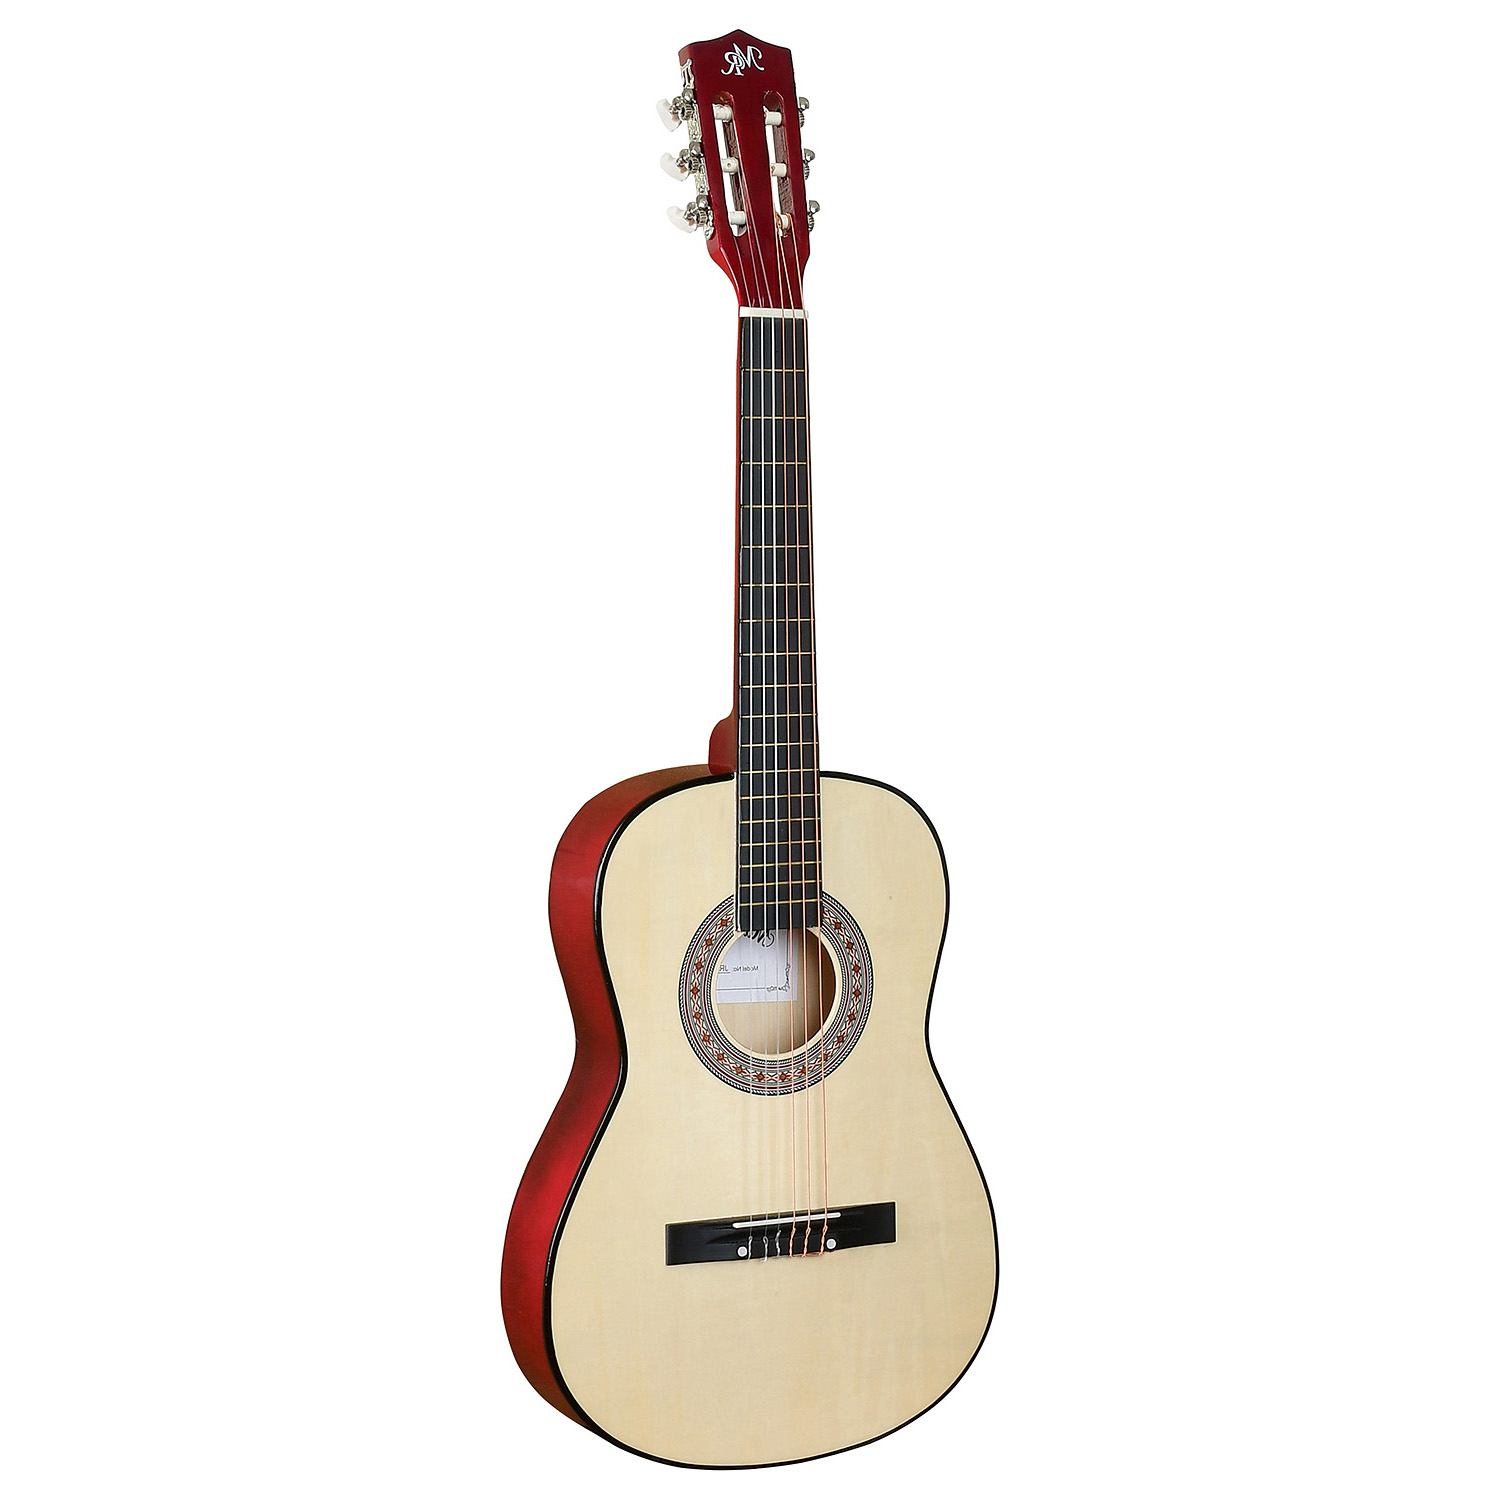 Martin Romas Jr-3610n Left - Леворукая классическая гитара, размер 3/4 для детей 9-14 лет